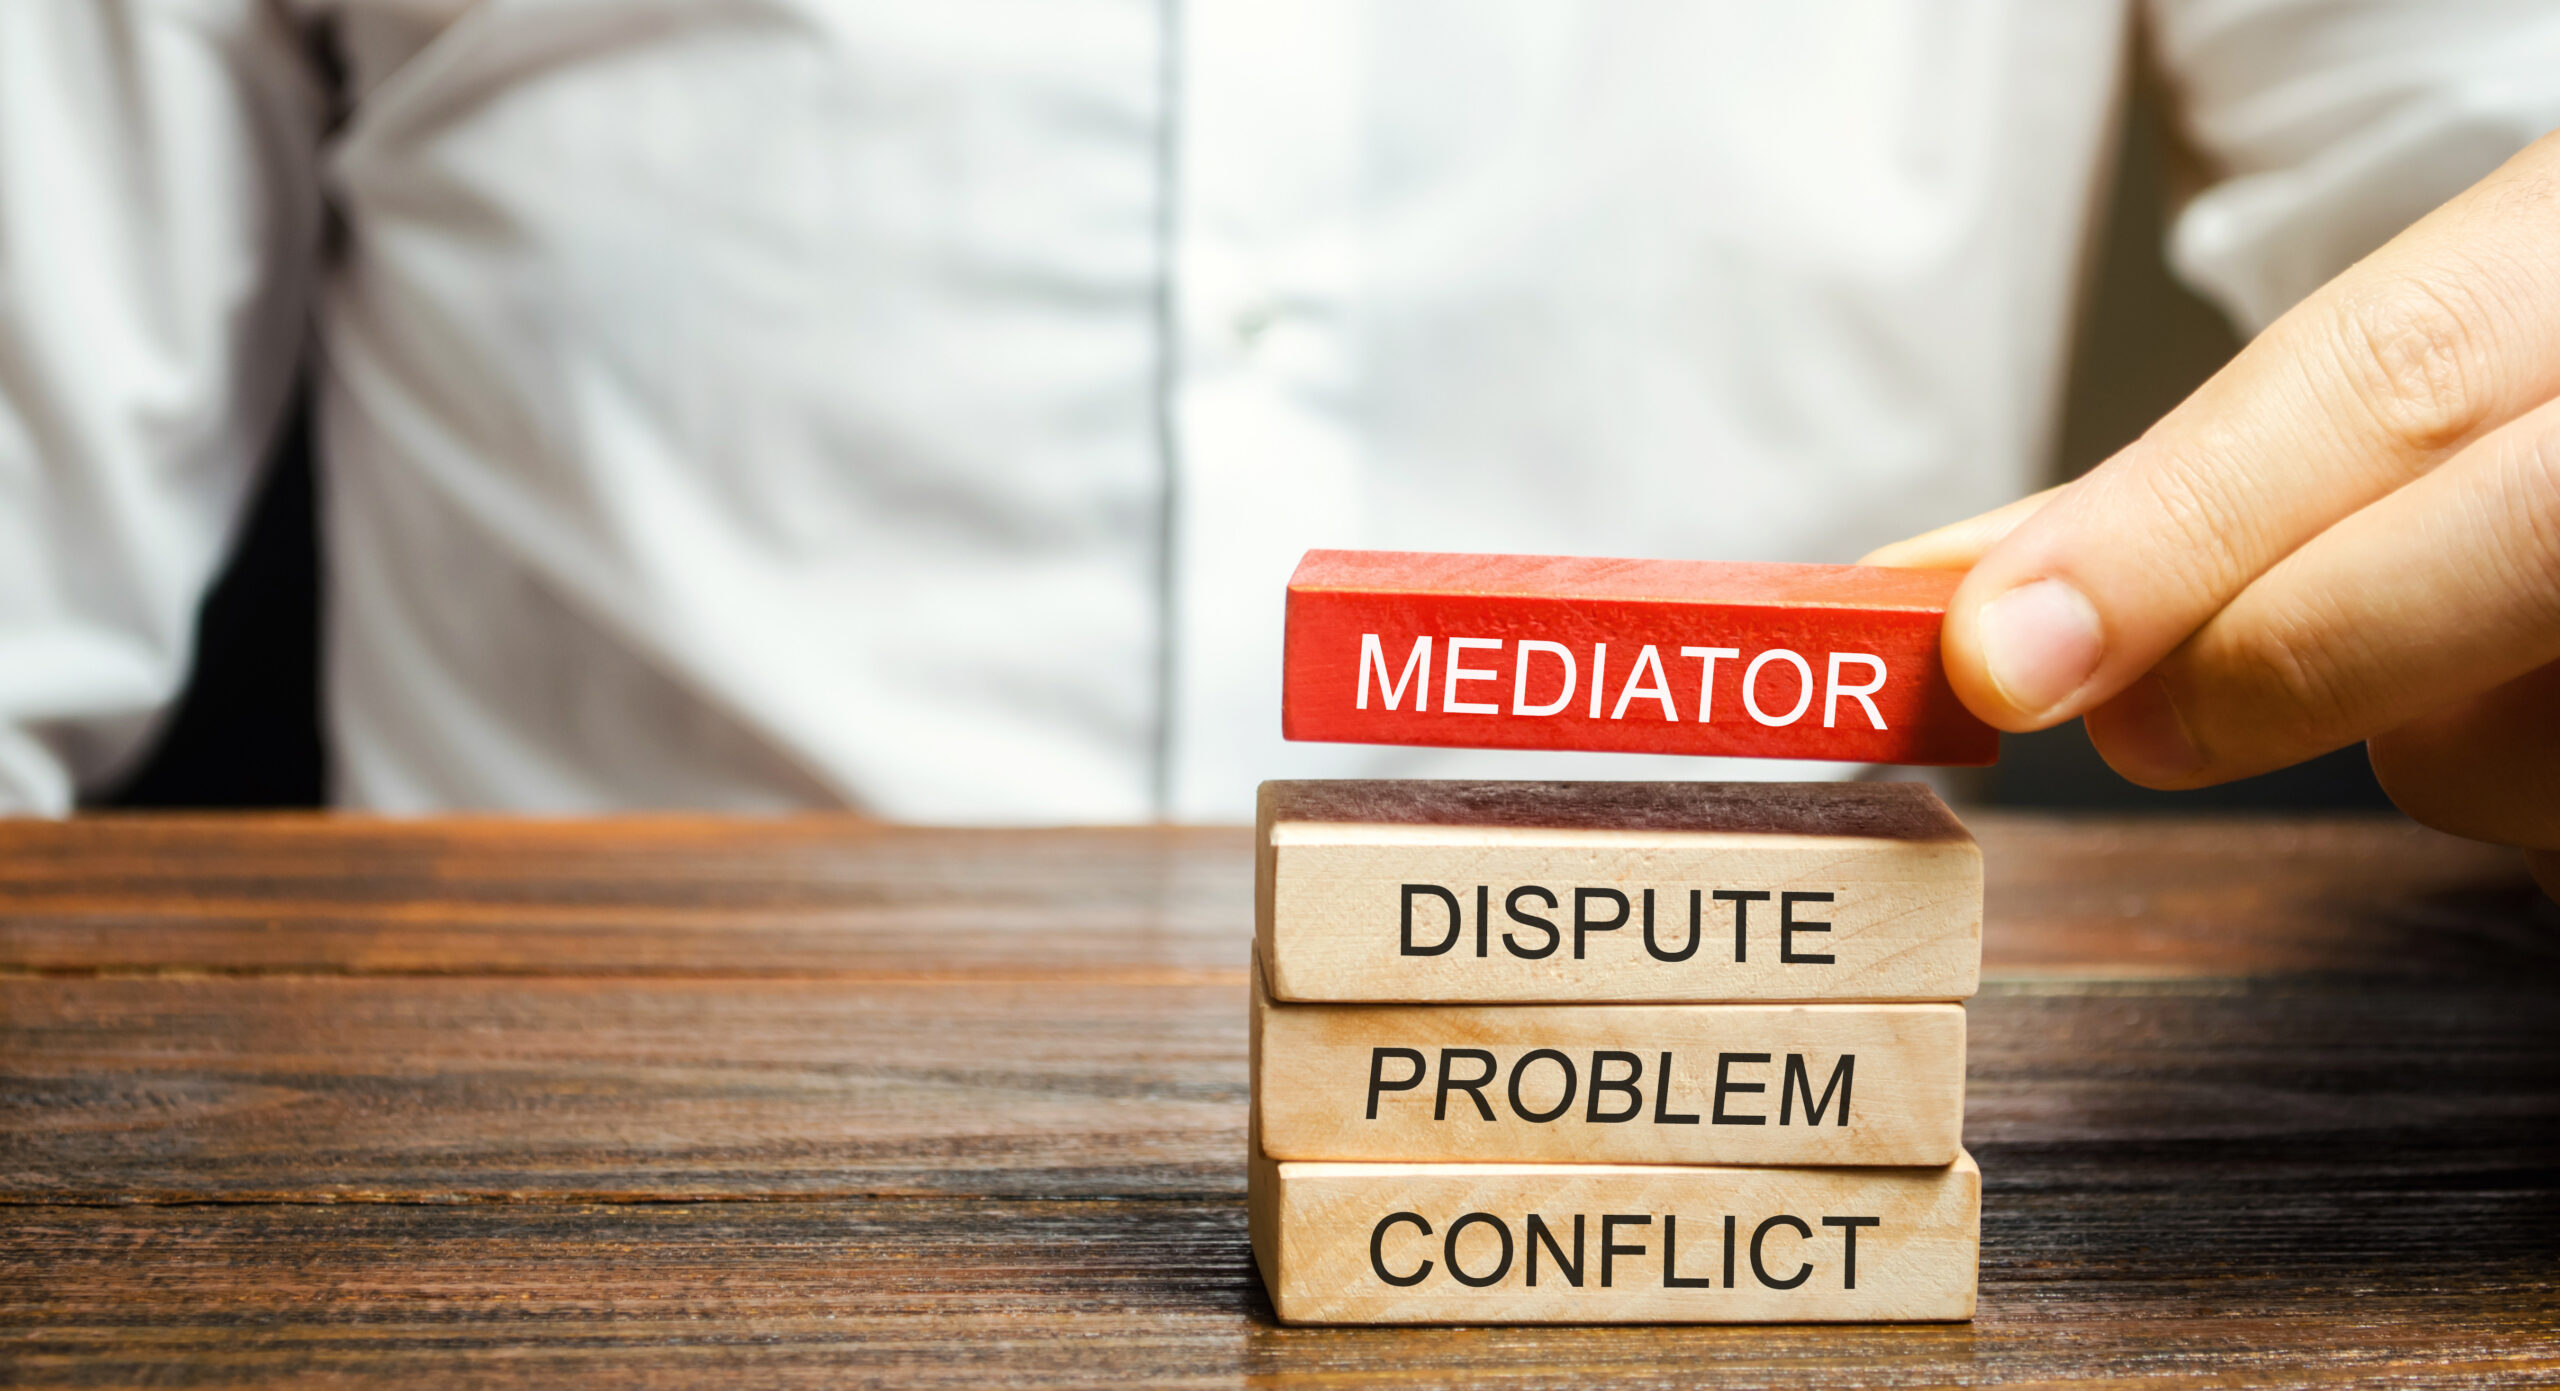 8. Consider Mediation